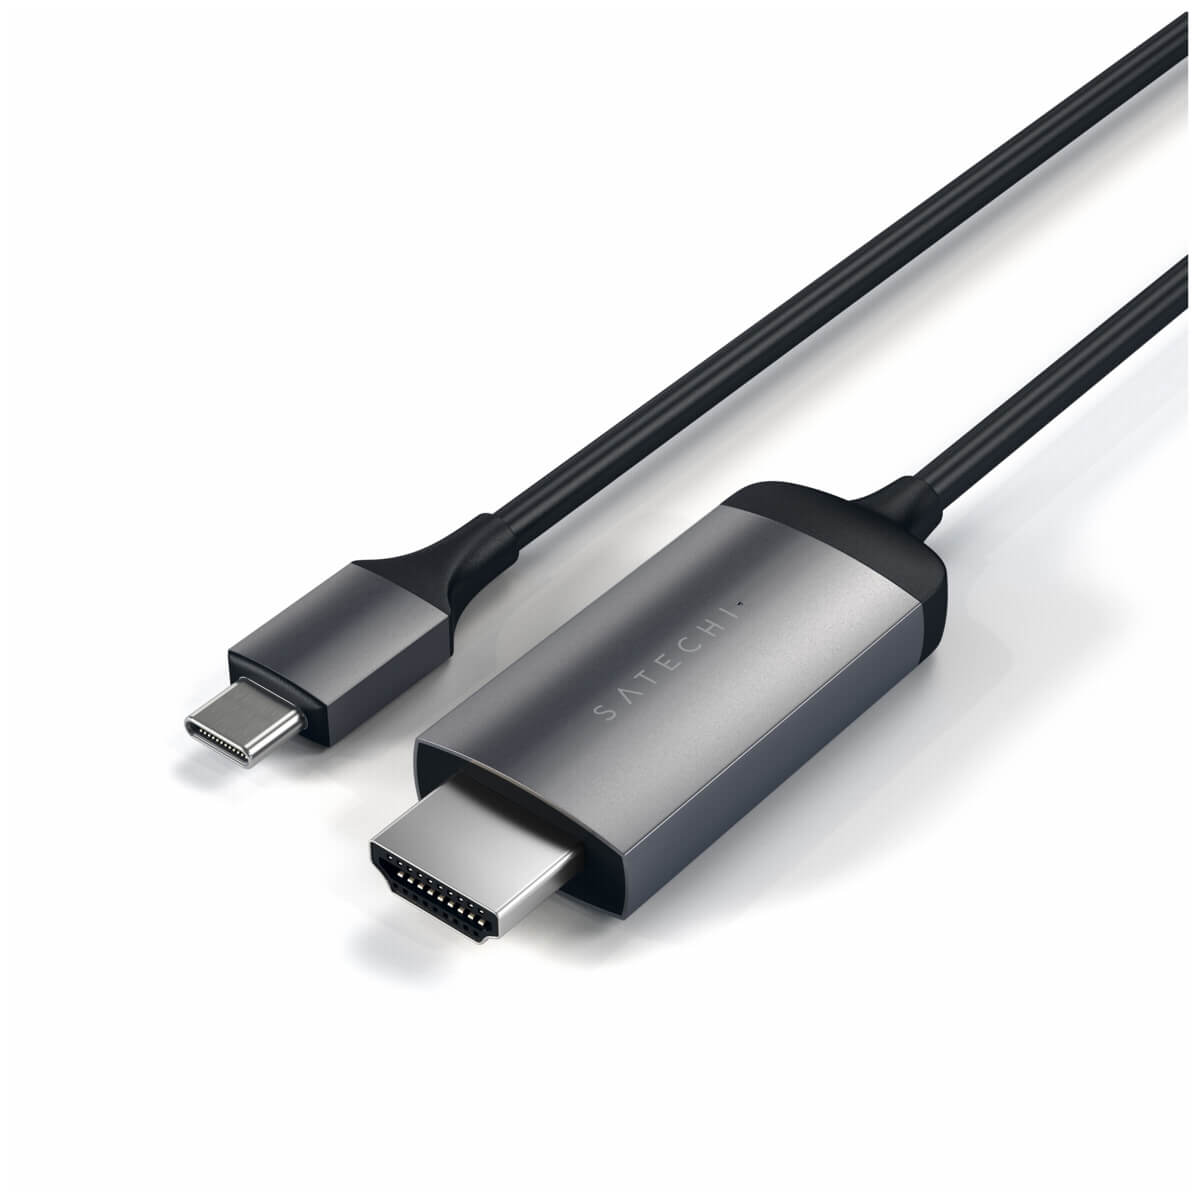 Satechi Aluminium 4K USB-C to HDMI Cable